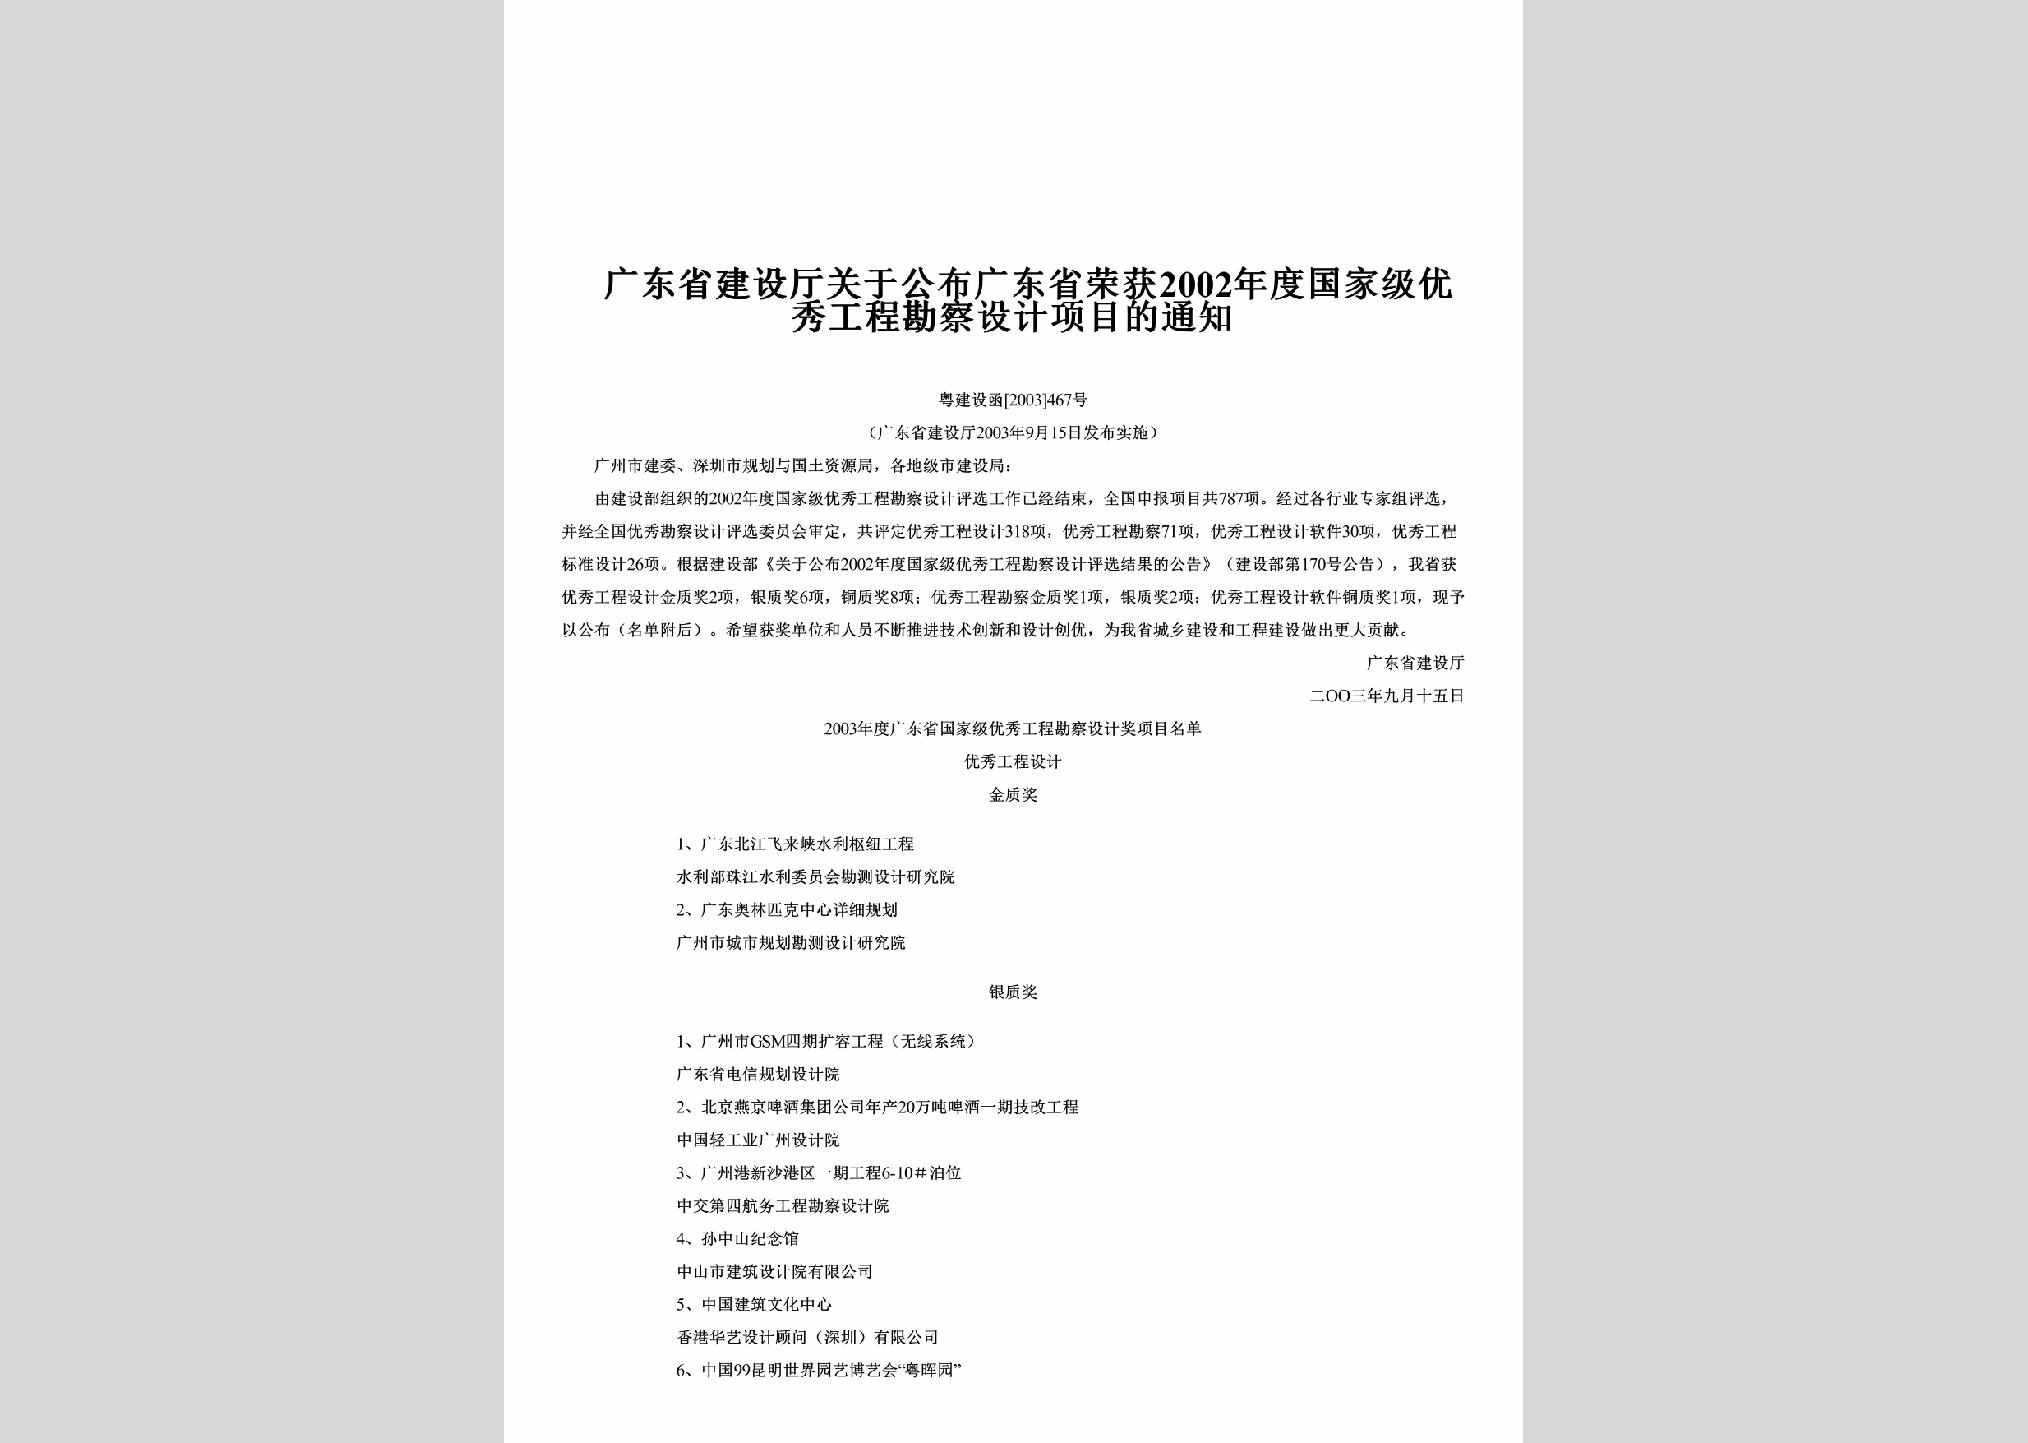 粤建设函[2003]467号：关于公布广东省荣获2002年度国家级优秀工程勘察设计项目的通知